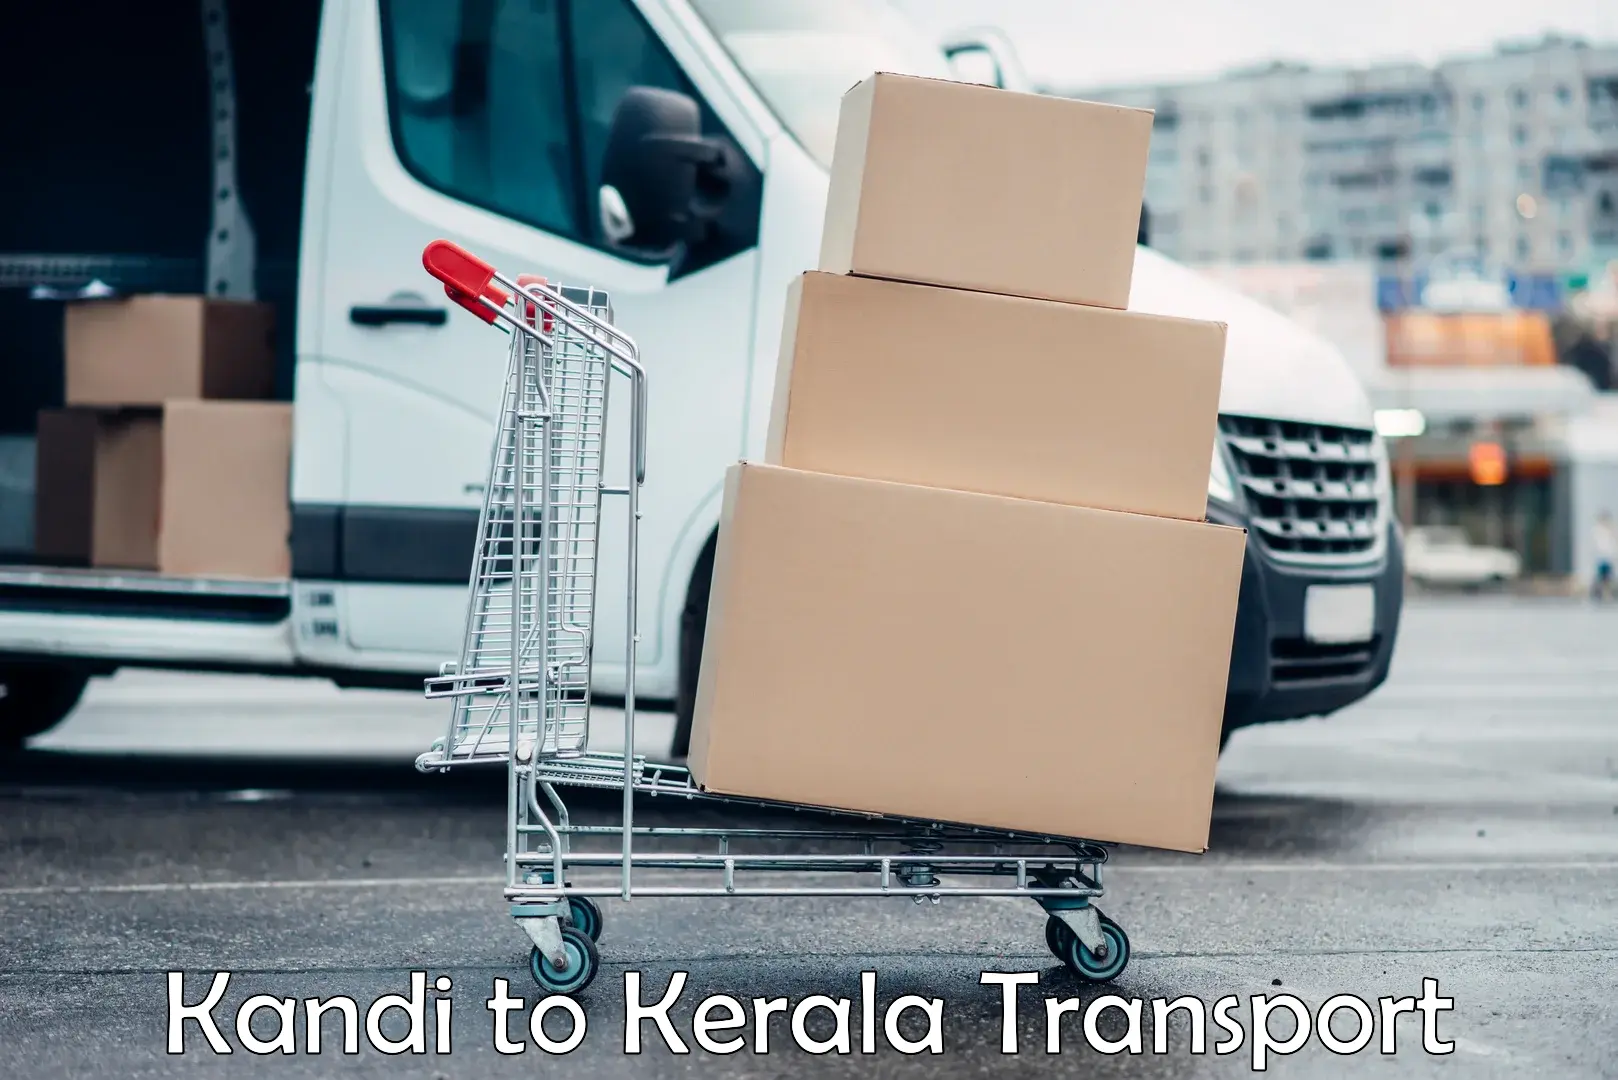 Lorry transport service Kandi to Chervathur